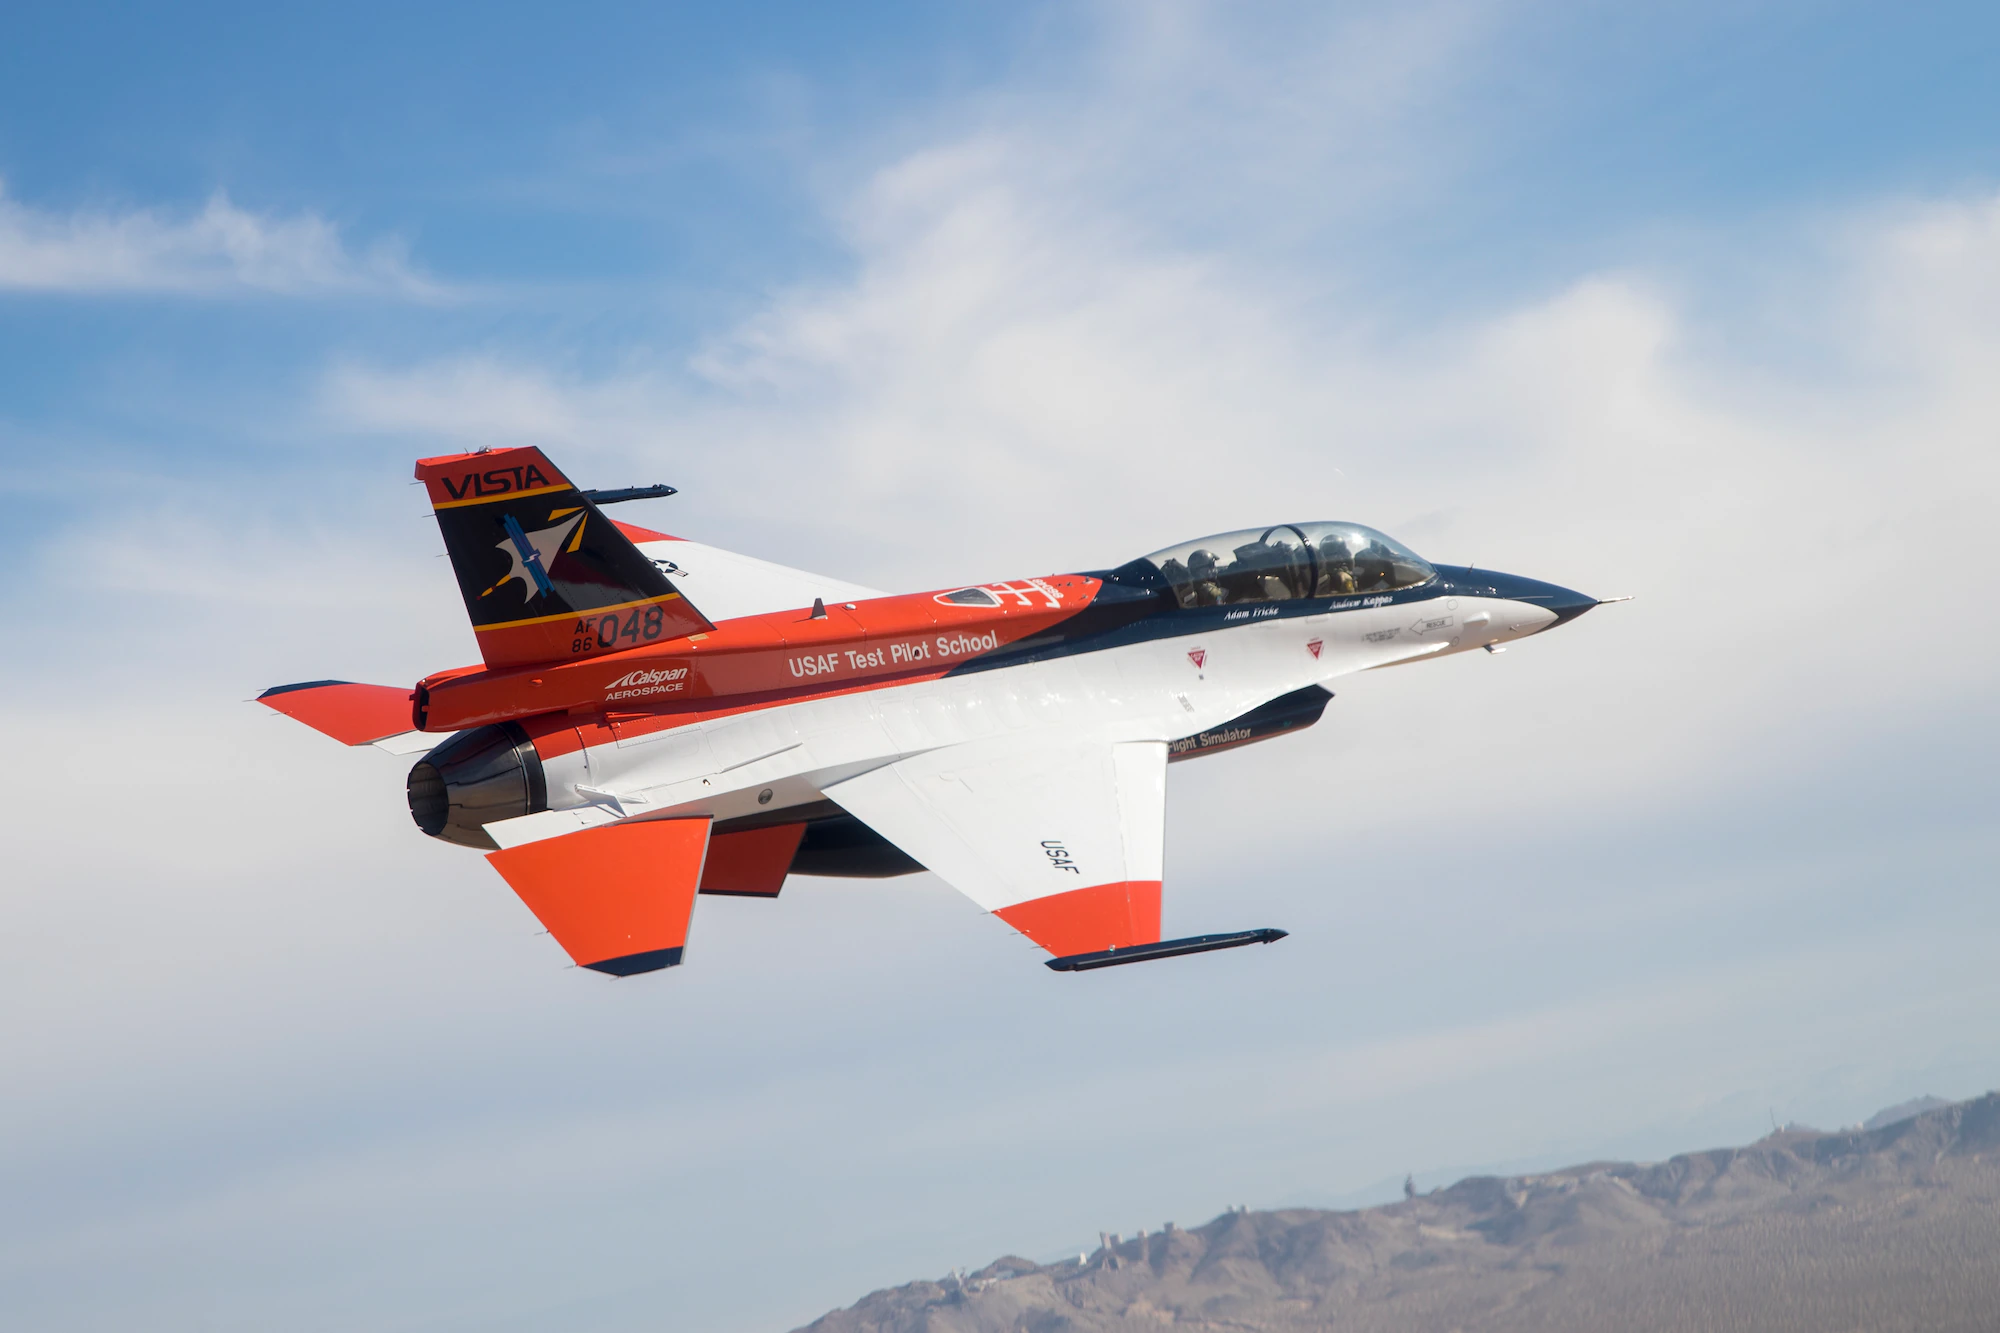 ВВС США протестируют модифицированную версию истребителя F-16 Fighting Falcon в рамках программы Skyborg по созданию дешёвых дронов на базе ИИ